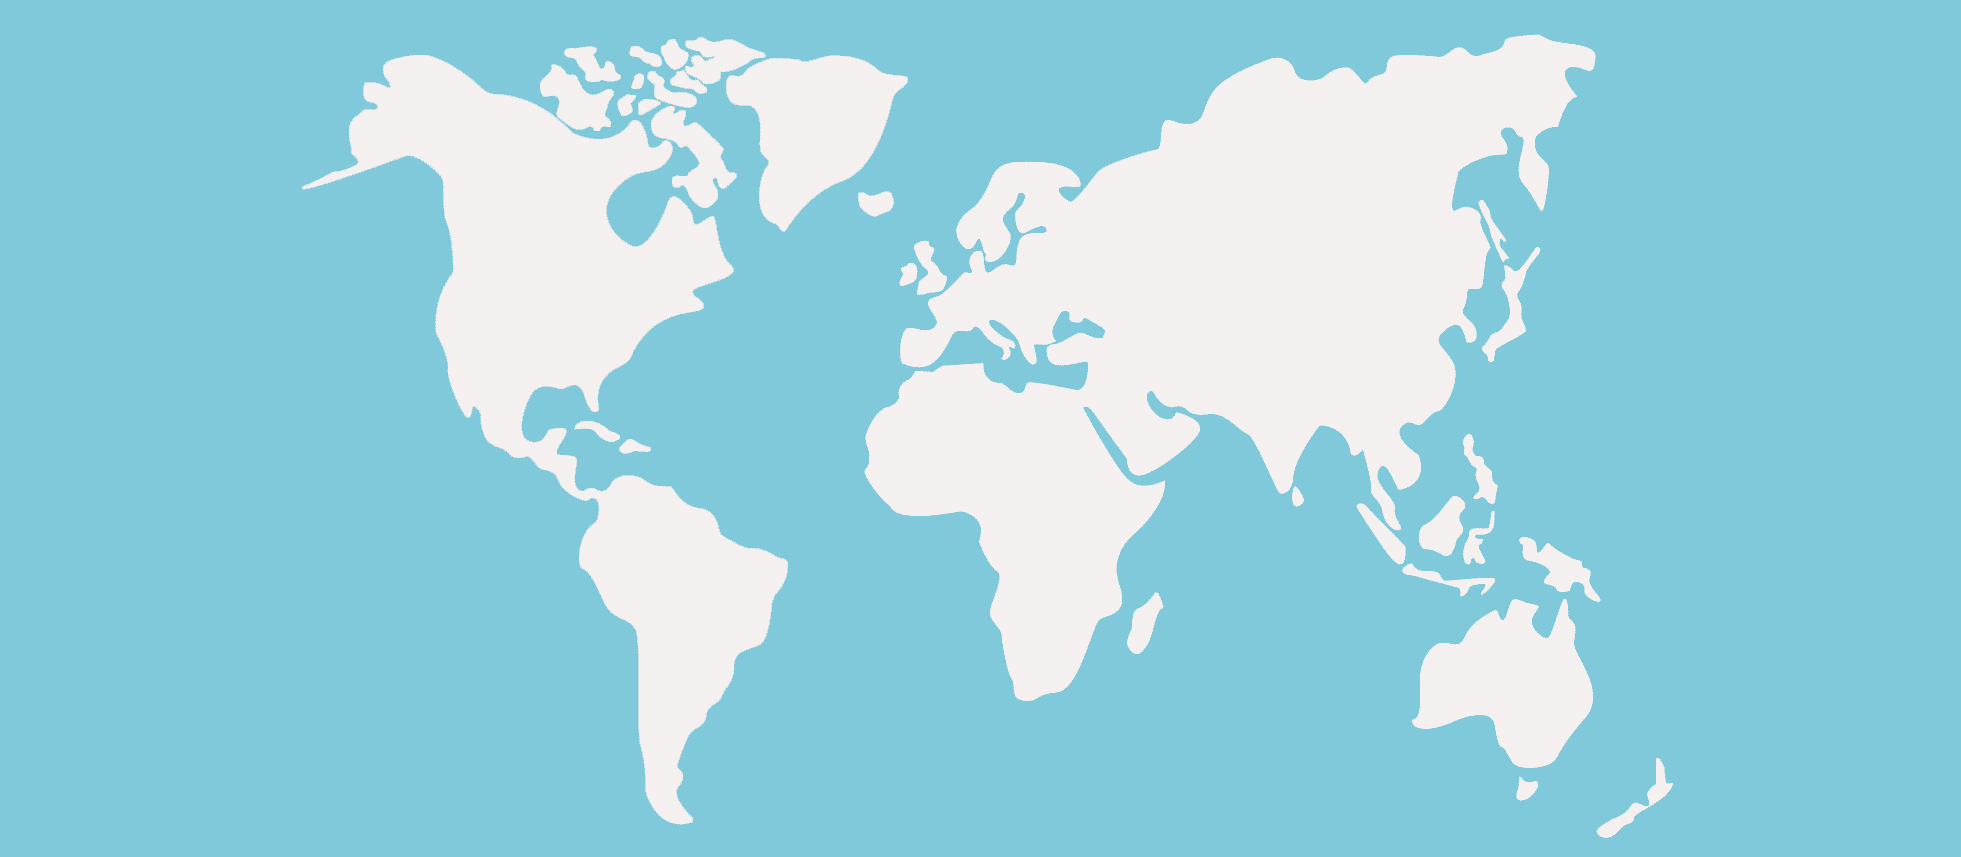 narrow-vecteezy_world-map-for-travel-illustration-vector-eps10_23797928